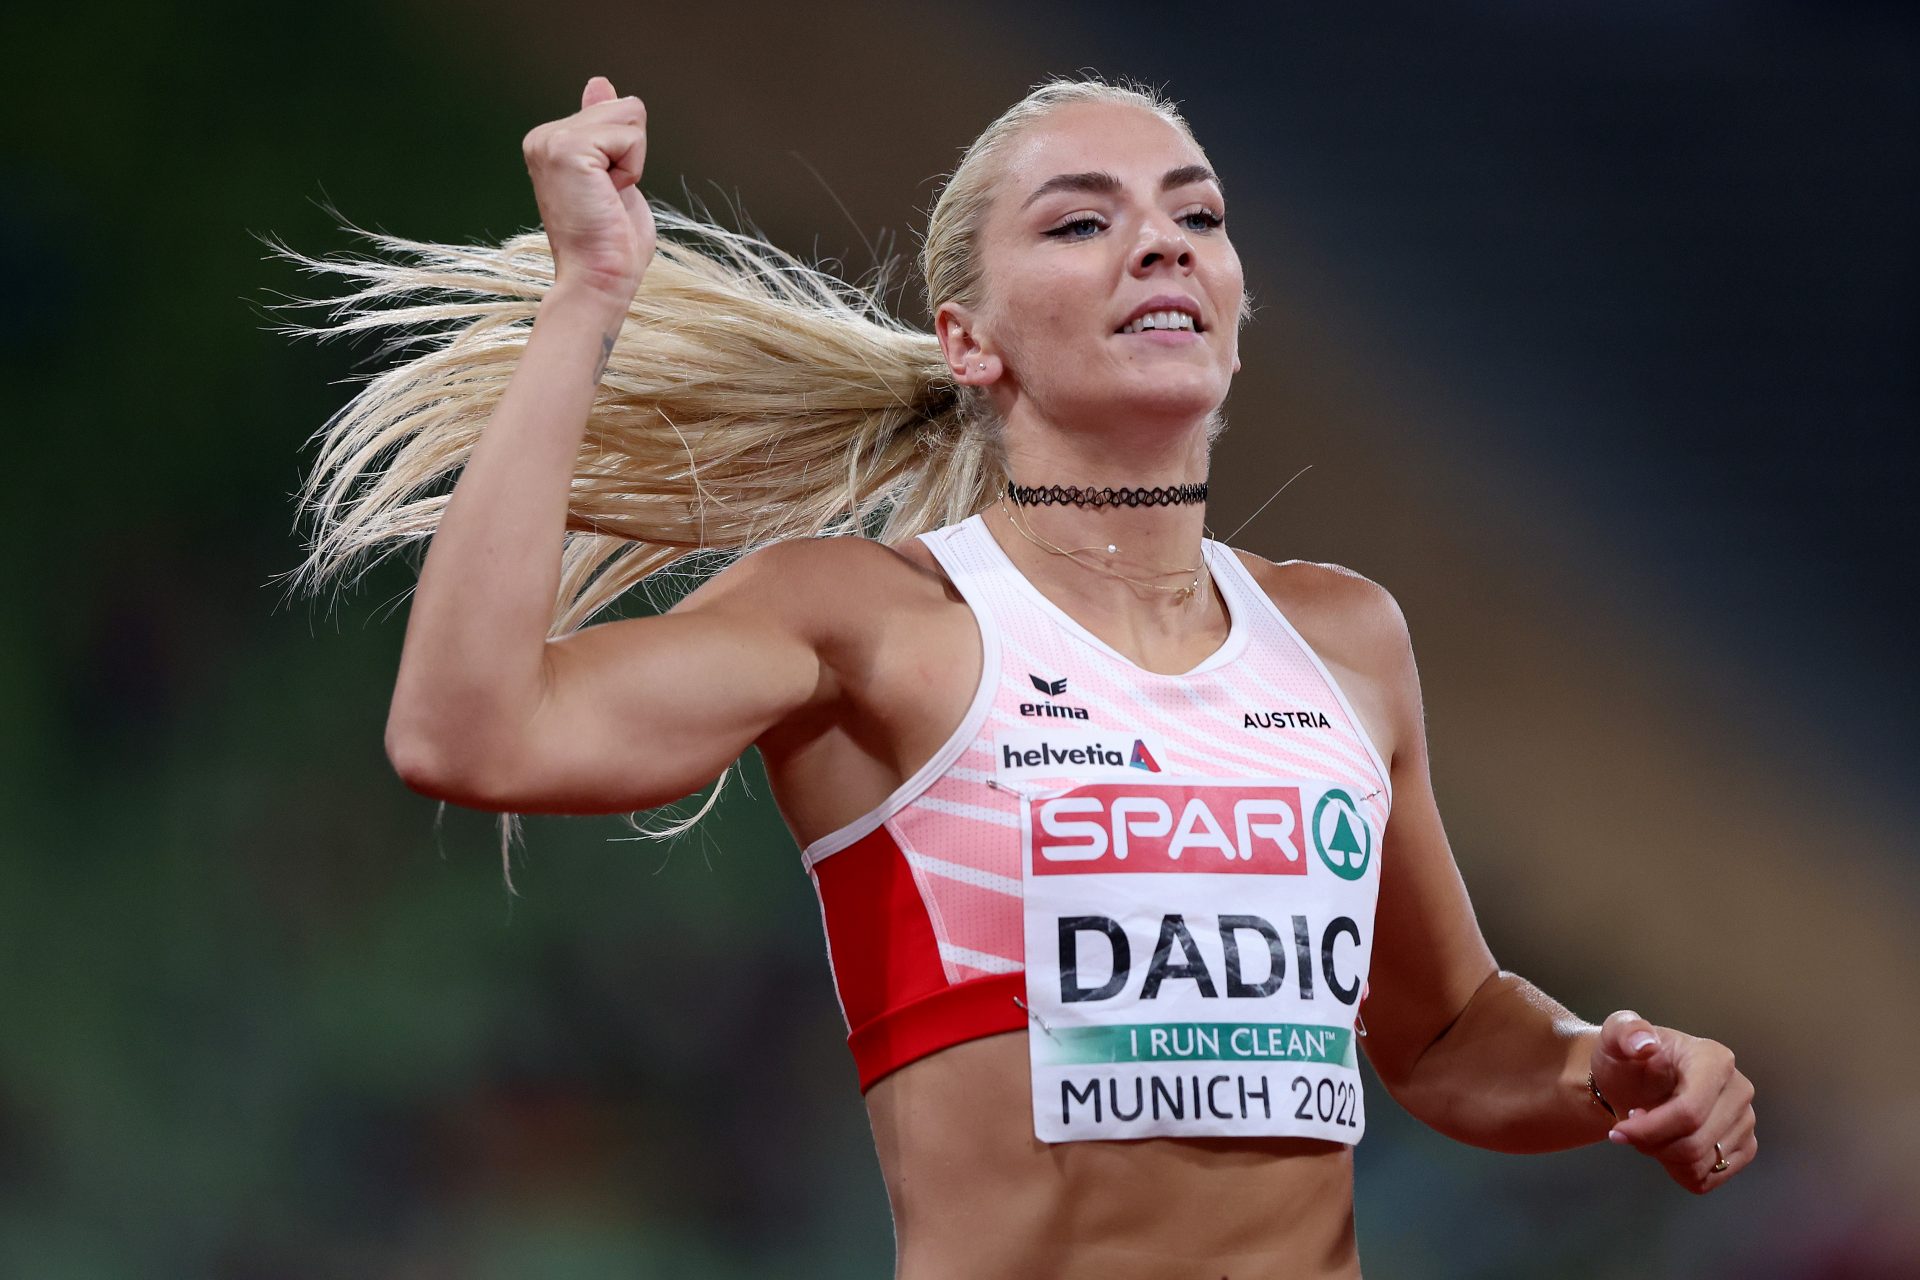 Wer ist die österreichische Siebenkampf-Athletin Ivona Dadic?